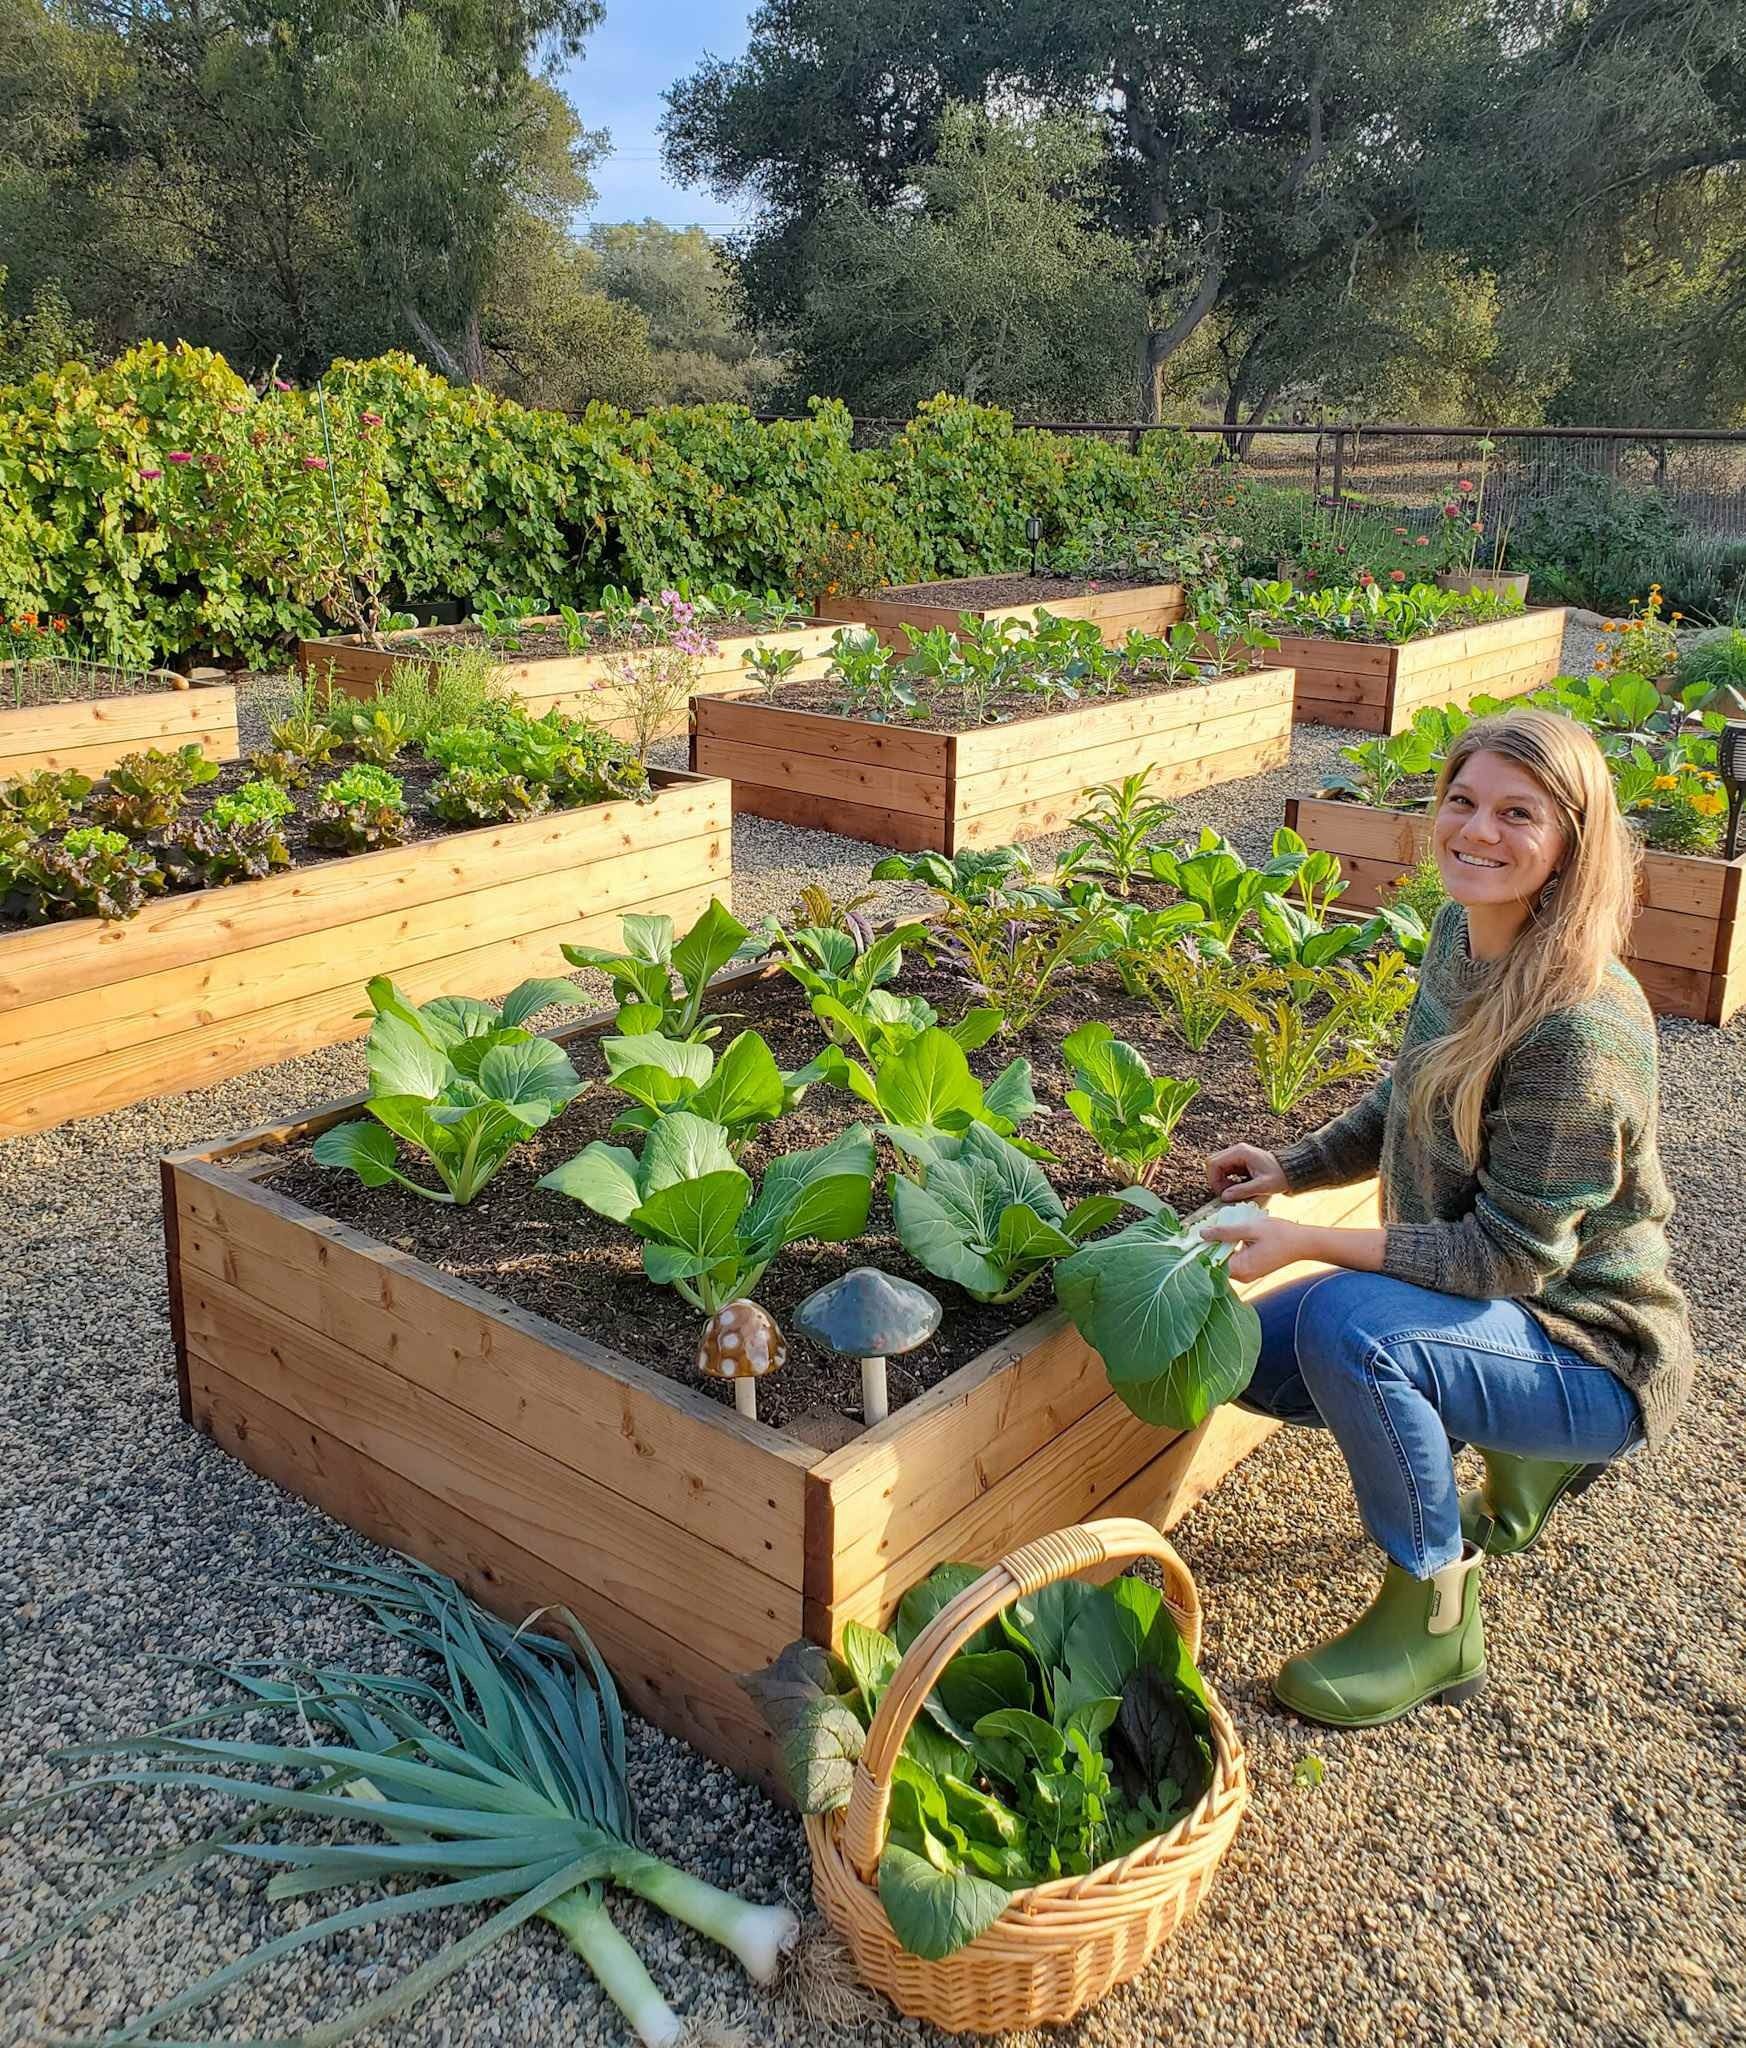 Growing a Lush Vegetable Garden in a Planter Box